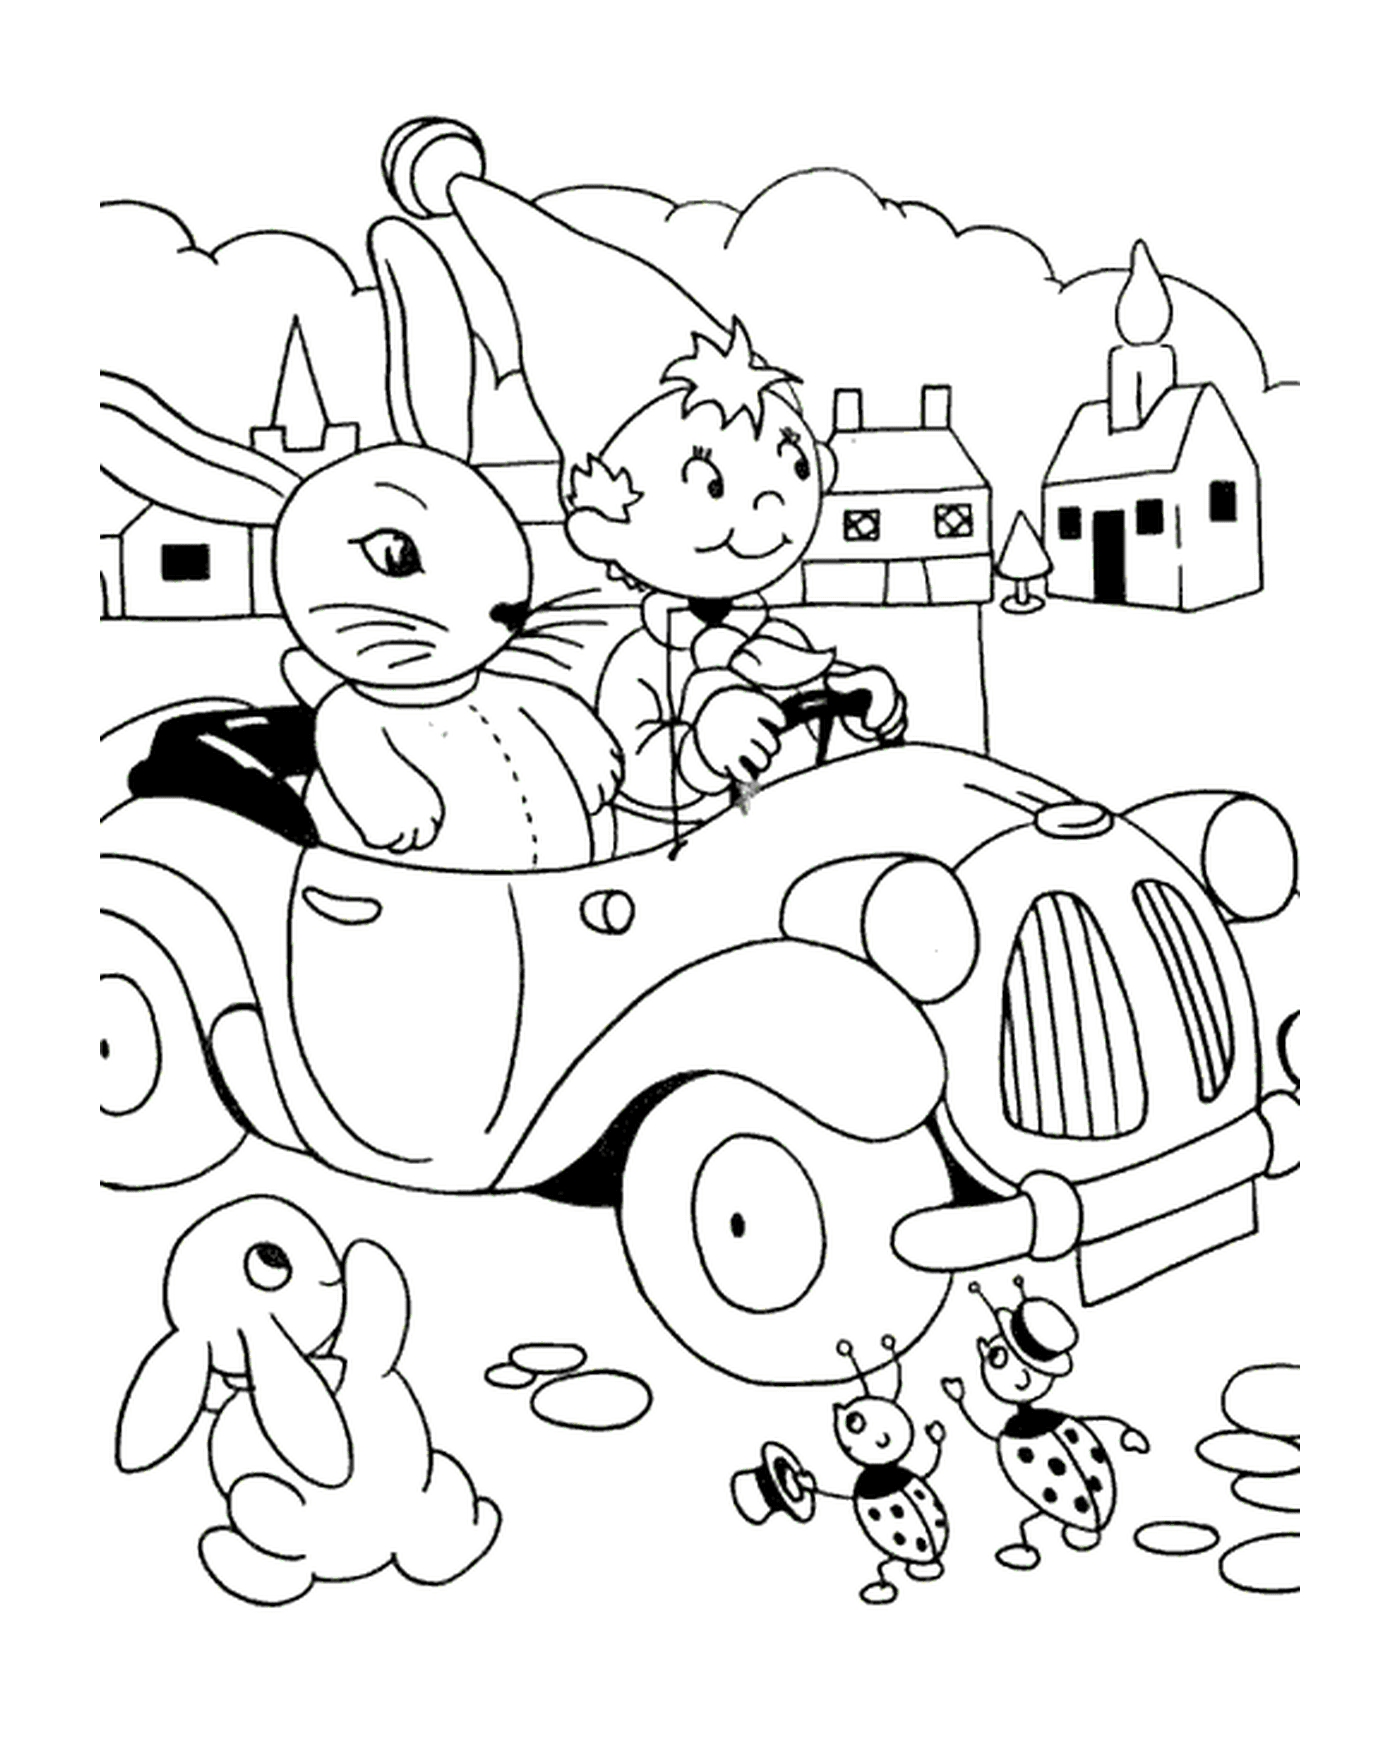  ja ja und Kaninchen im Auto 